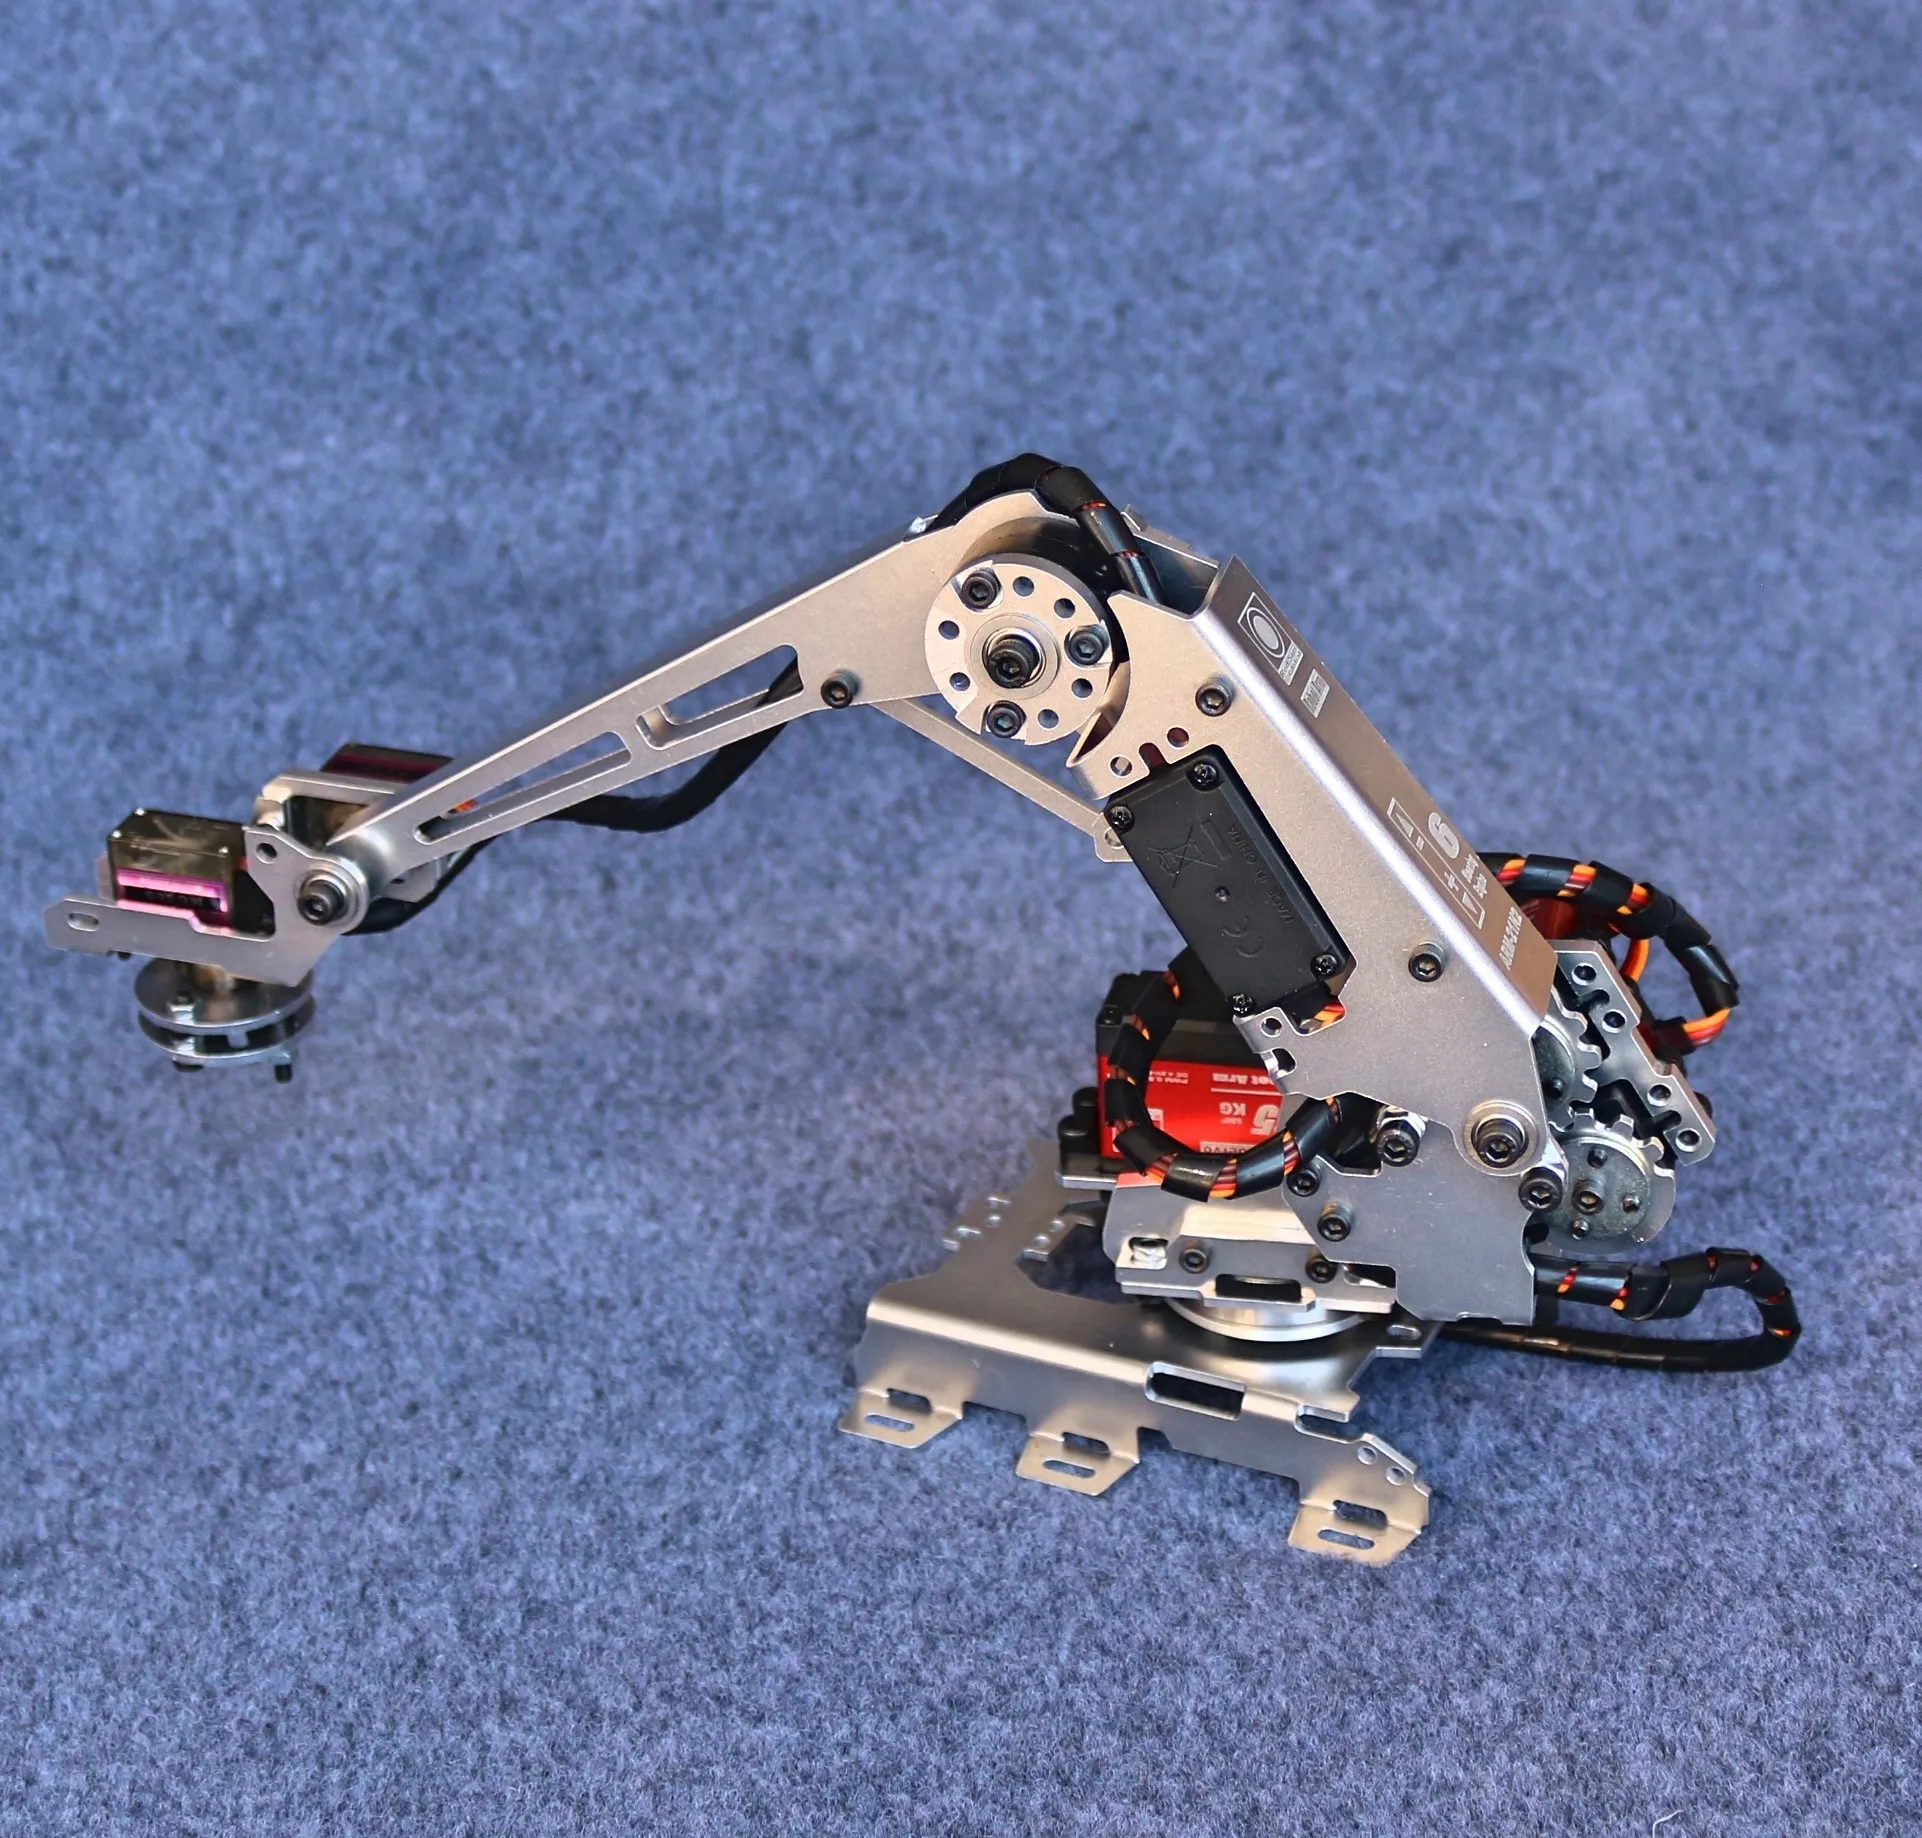 

Новая 6-осевая Роботизированная рукоятка с сервоприводами для промышленного робота-манипулятора Arduino Multi DOF